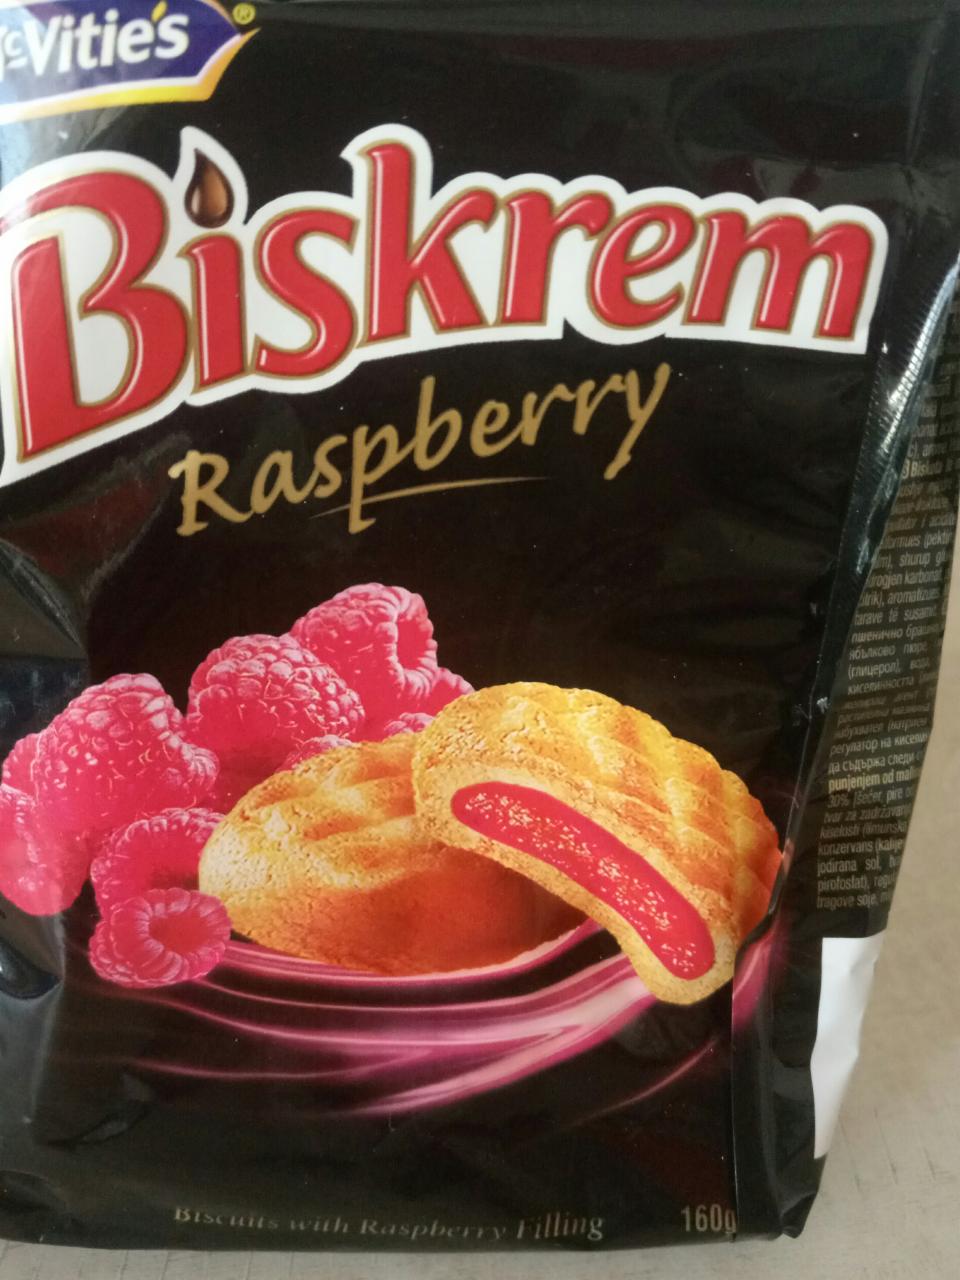 Фото - Печенье с малиновой начинкой Raspberry Biskrem Ülker